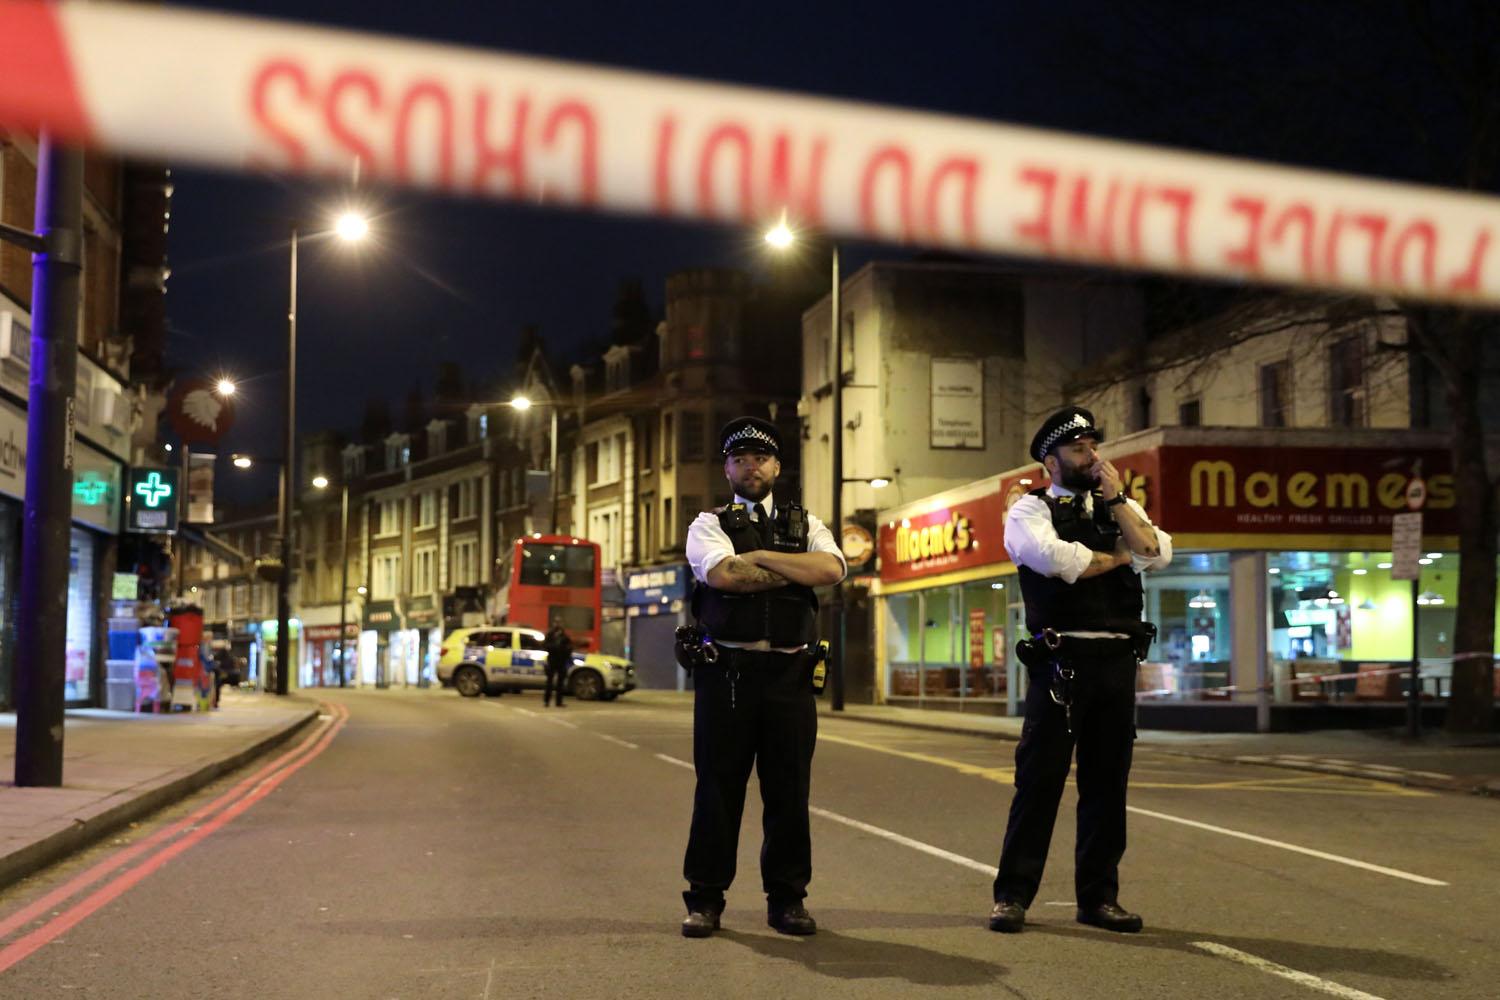  ثلاثة اصابات في هجوم الطعن جنوب لندن احداها خطيرة